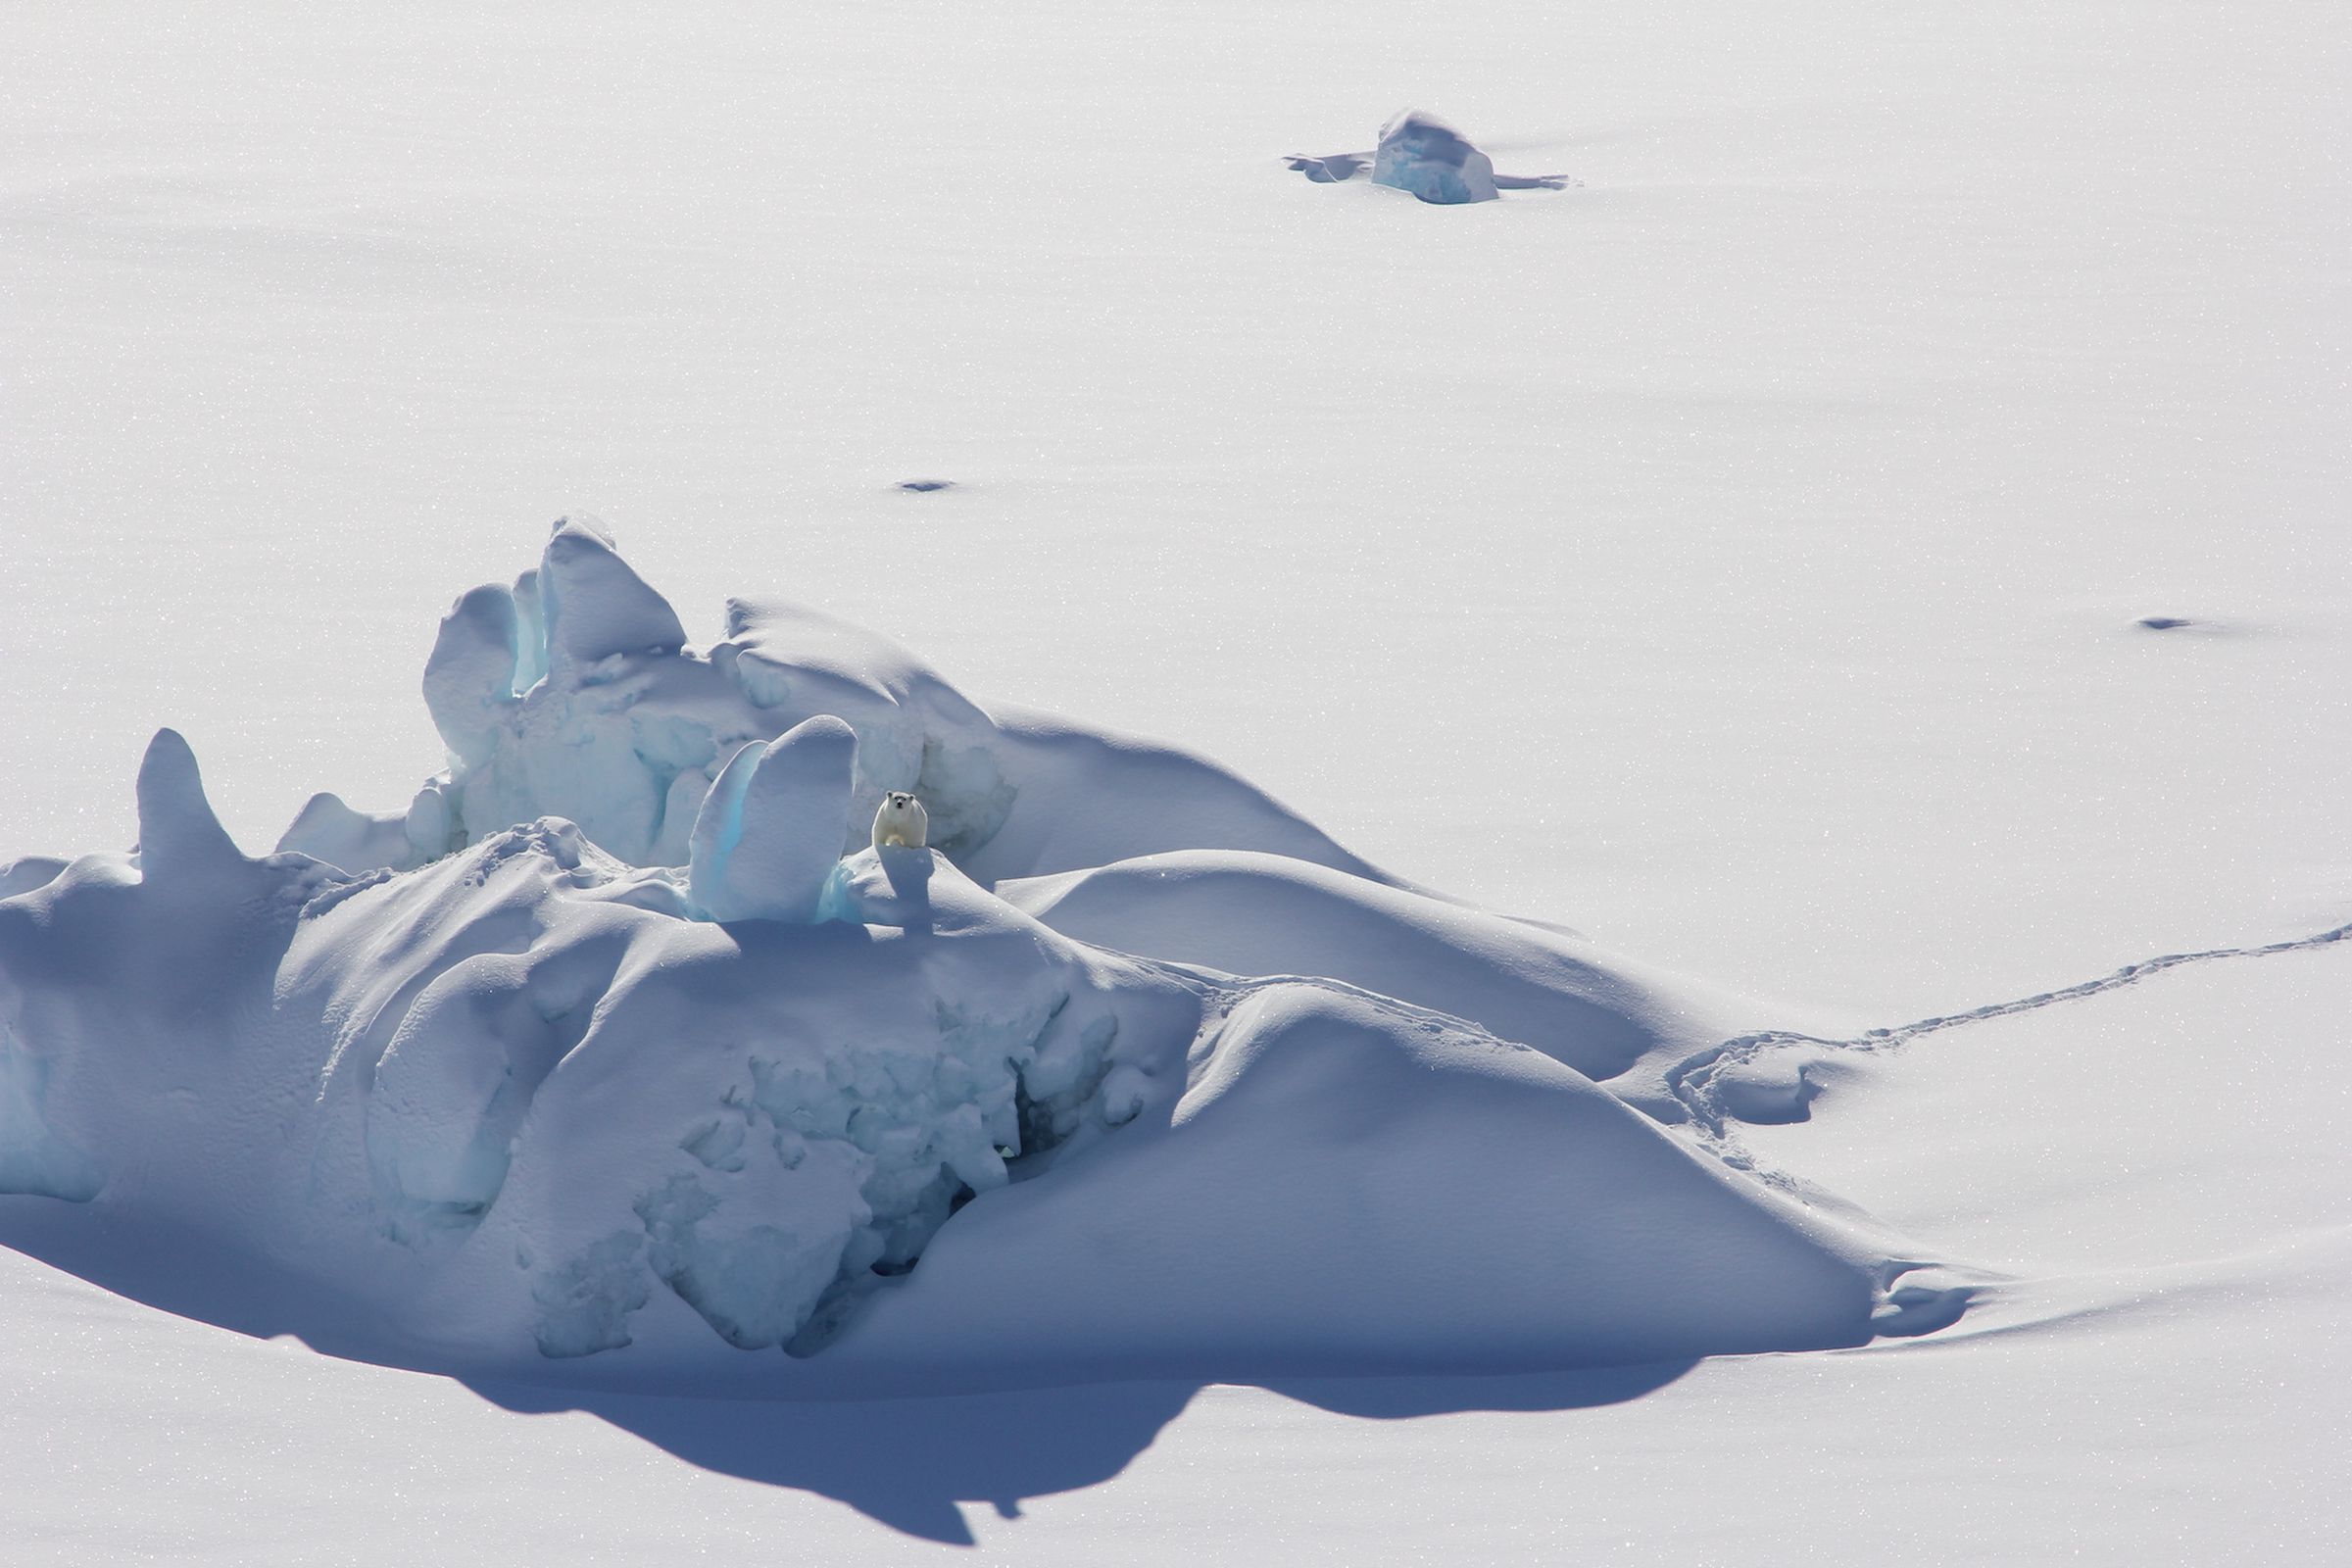 A polar bear stands on a snow-covered iceberg